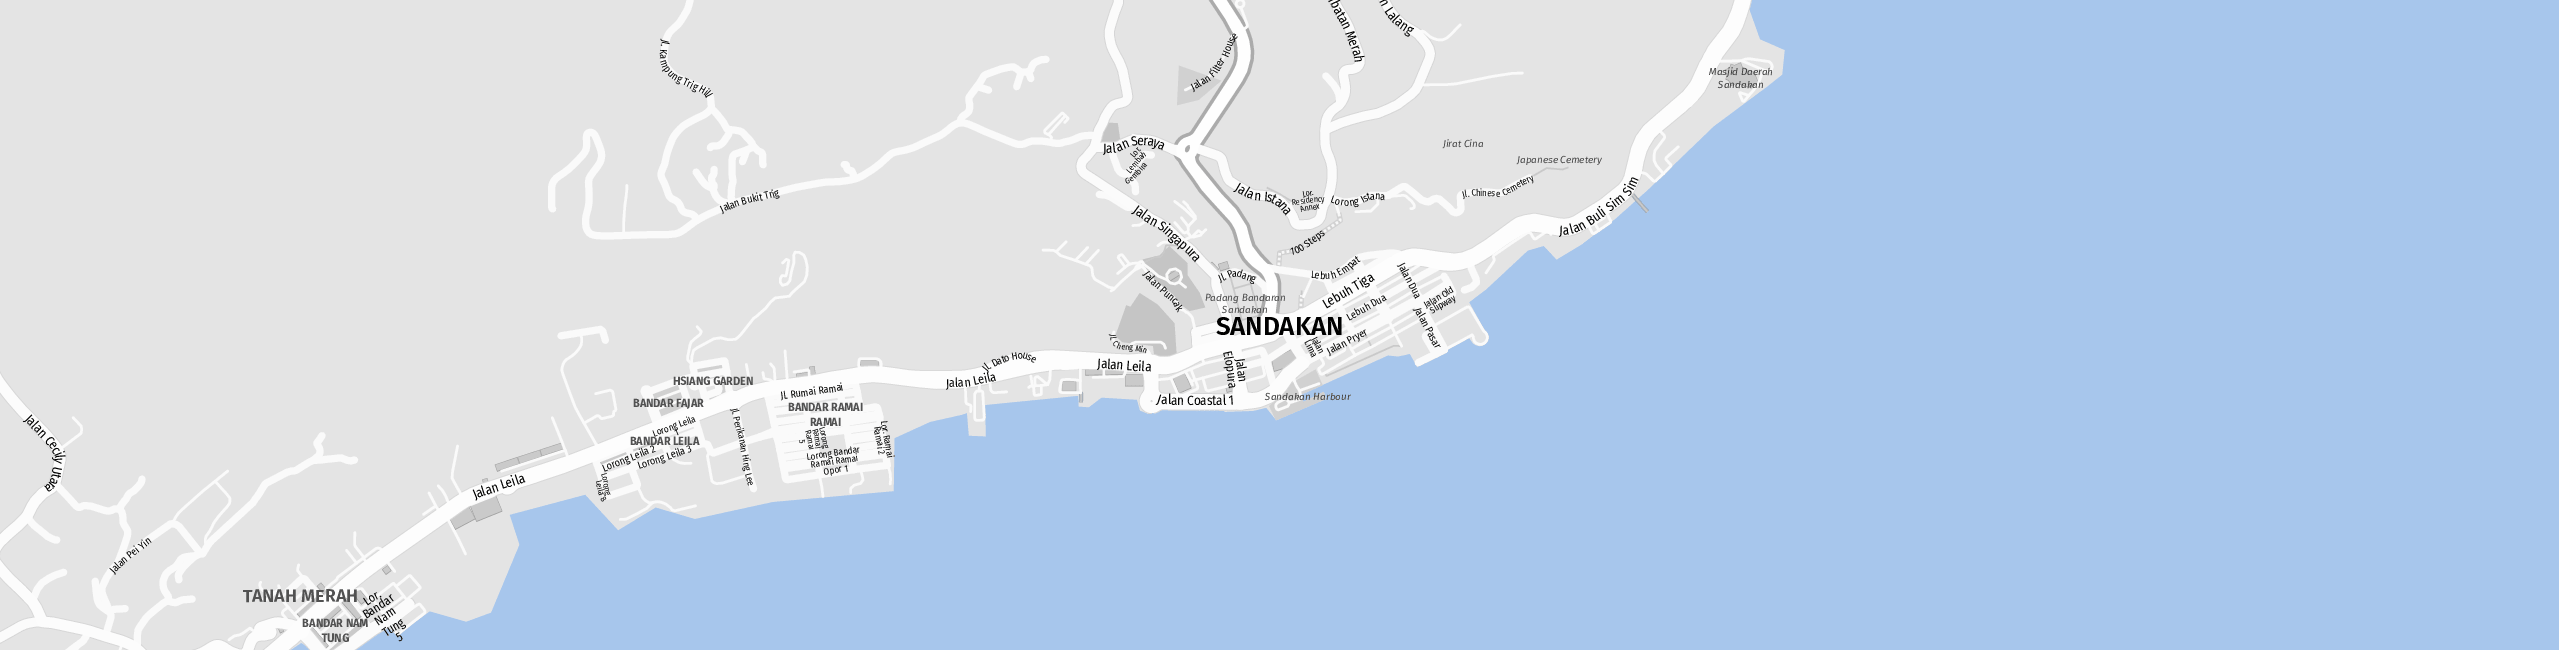 Stadtplan Sandakan zum Downloaden.